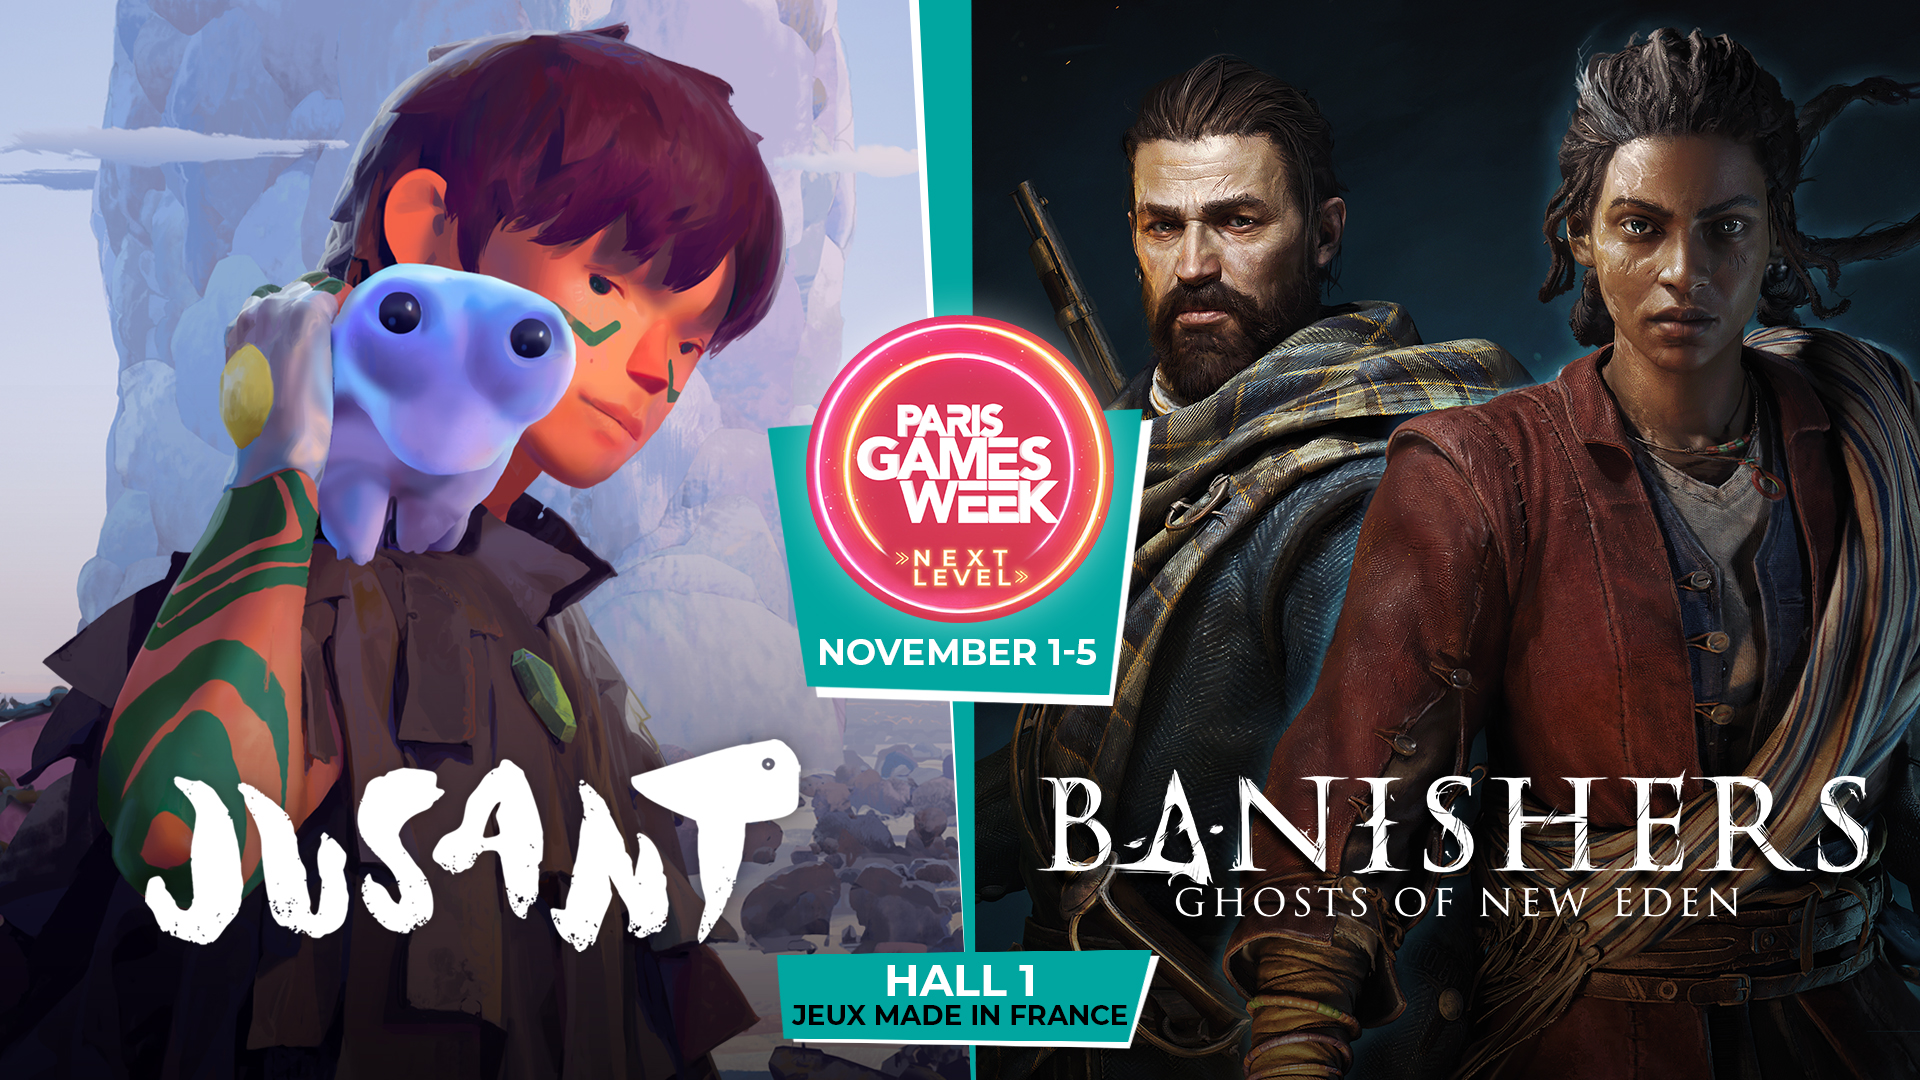 See you at Paris Games Week!